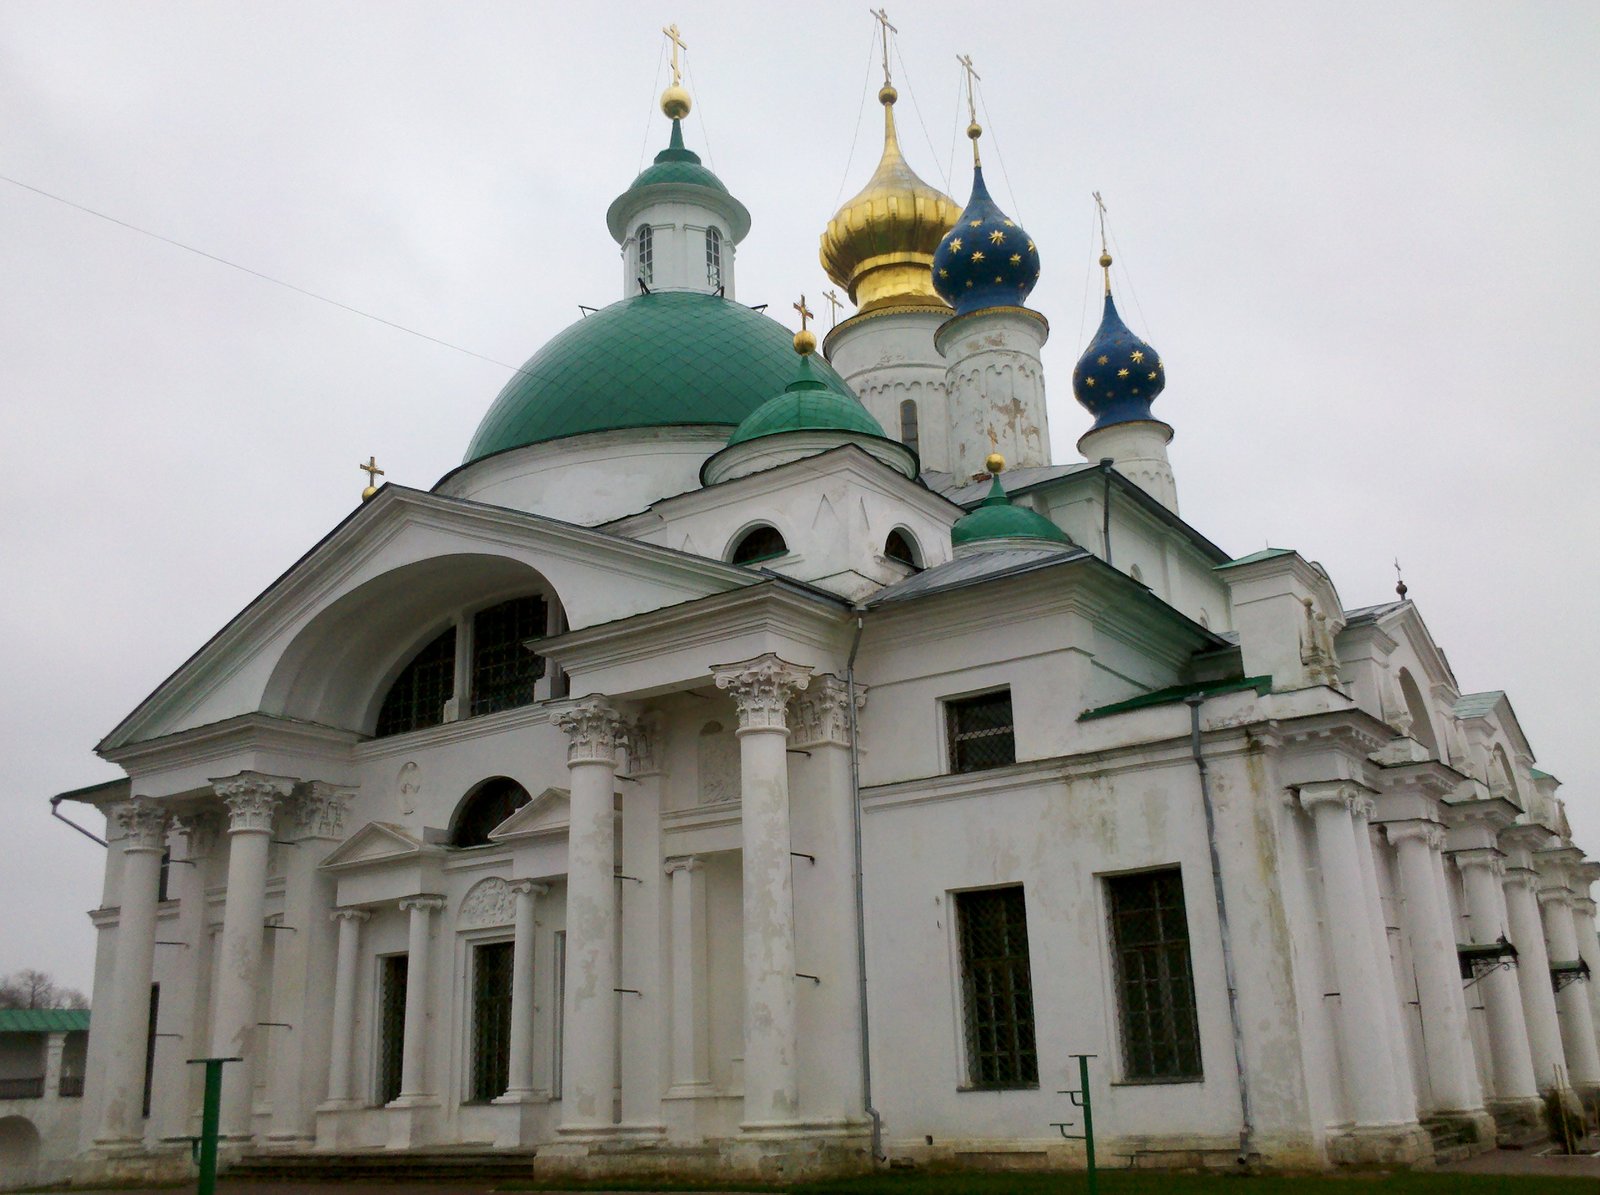 2013-11-10_12-36-16_960 Слева-церковь Иакова Ростовского, справа